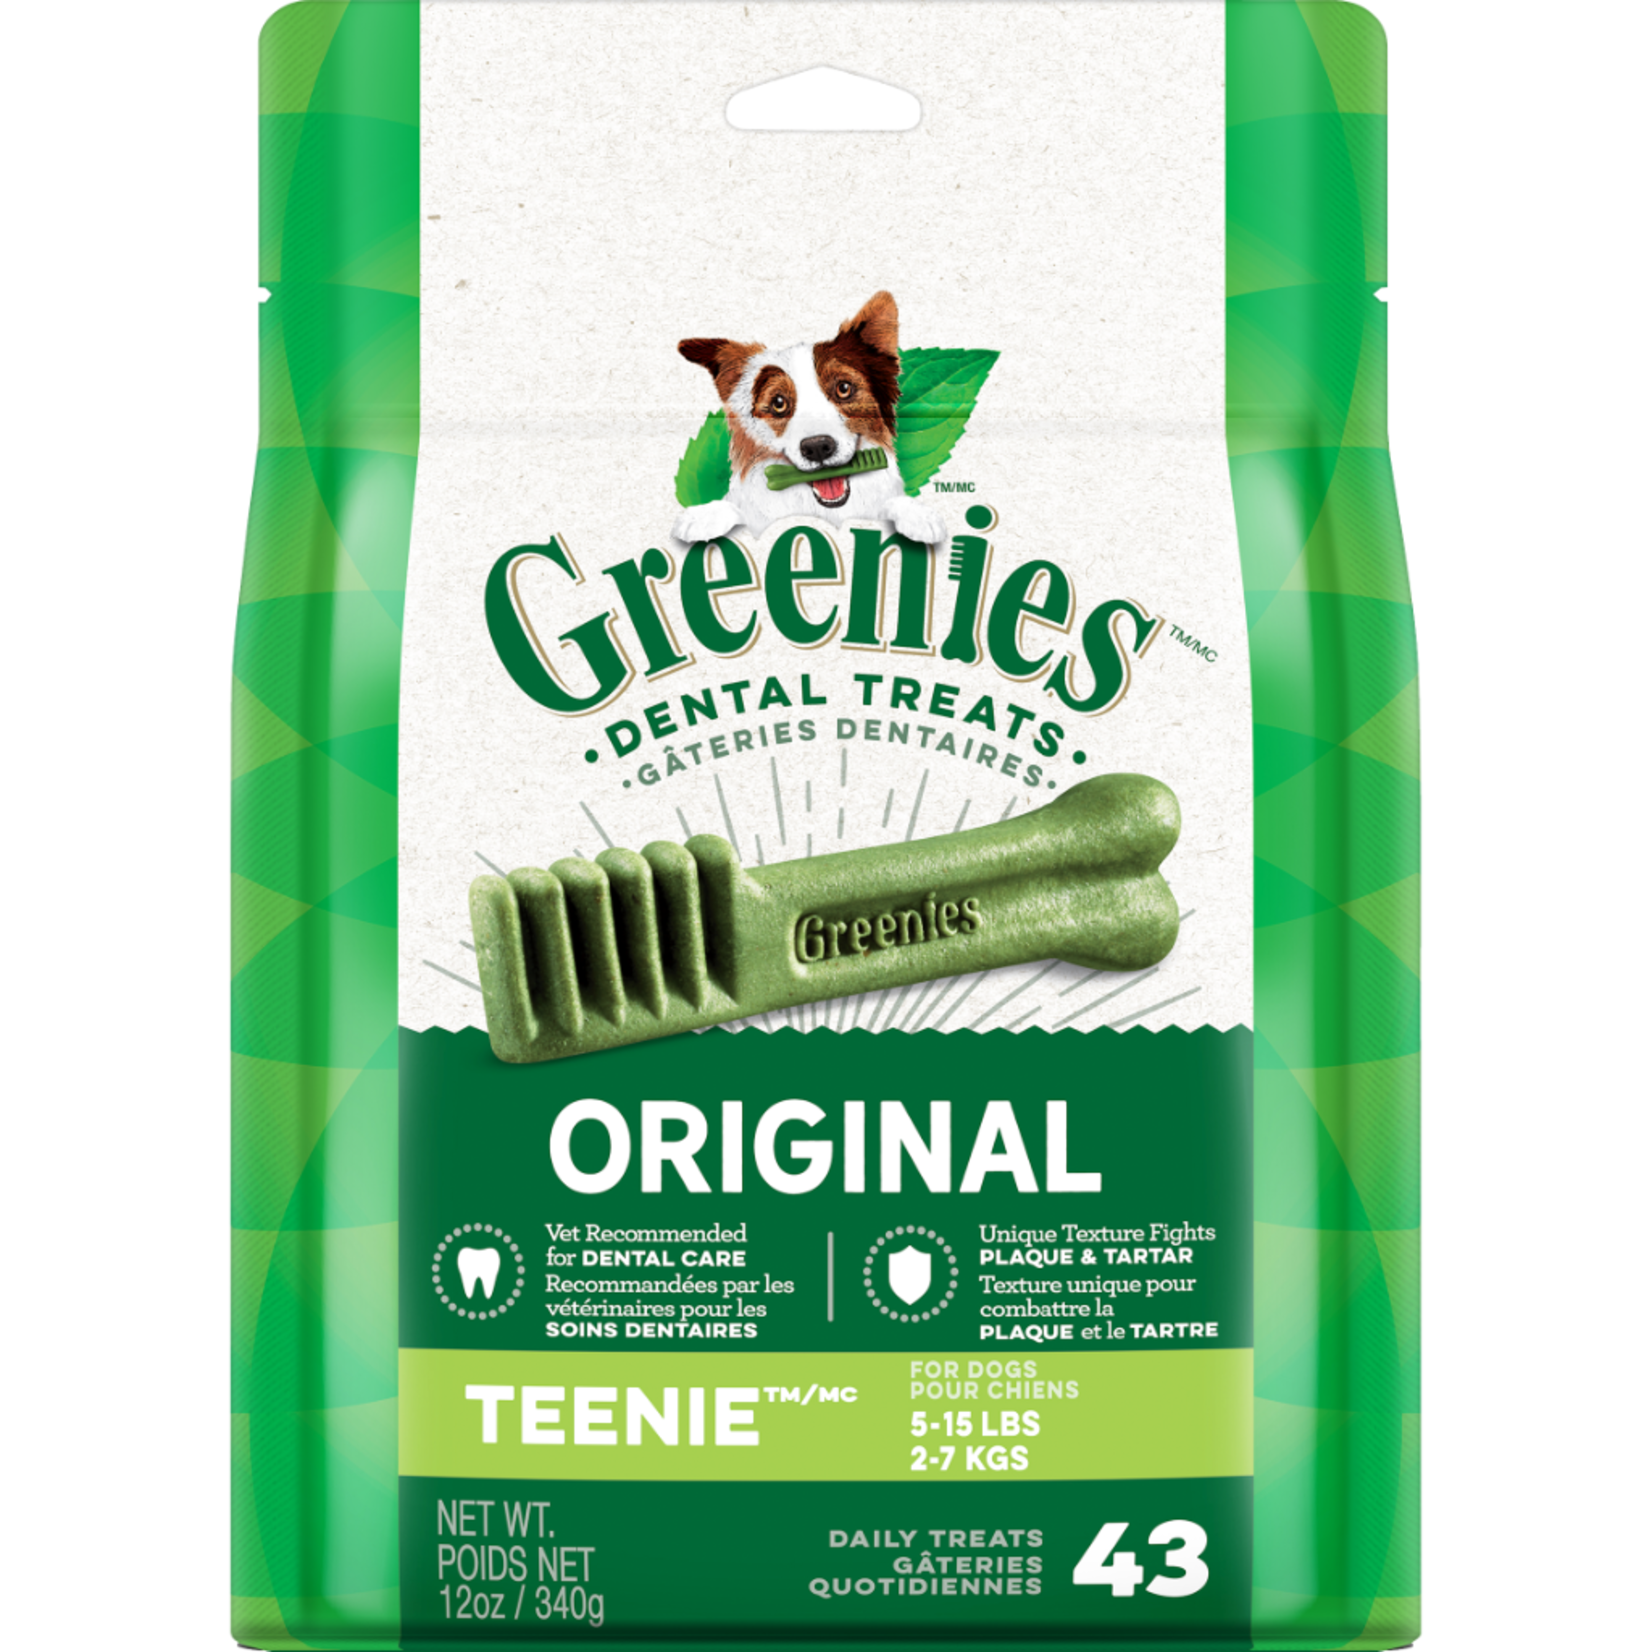 Greenies Greenies Original Teenie 43CT / 12OZ